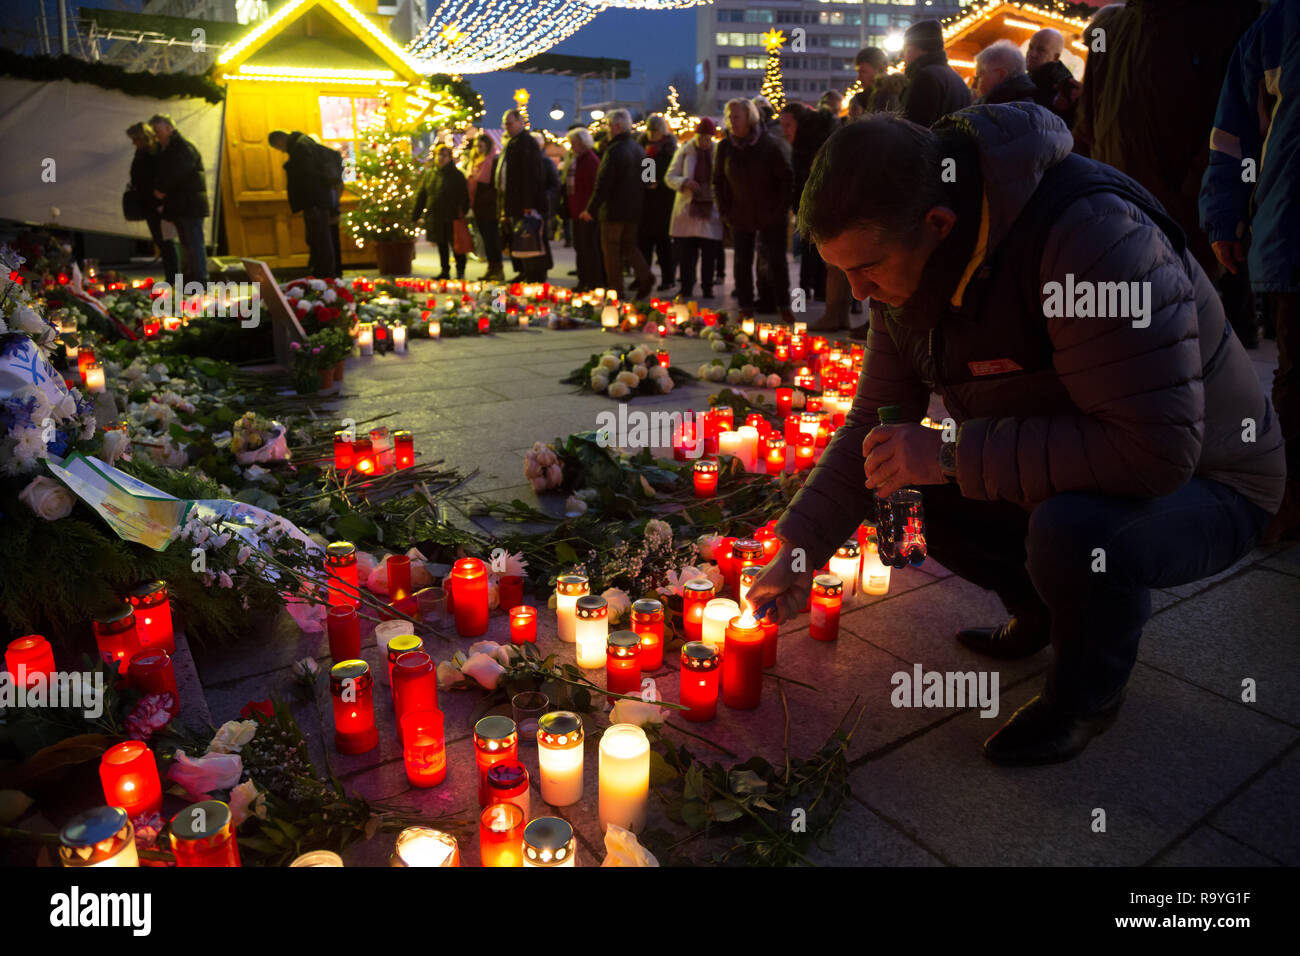 20.12.2017, Berlin, Berlin, Deutschland - Gedenken an die Opfer des Terroranschlags am Weihnachtsmarkt am Breitscheidplatz am 19.12.2016. Kerzen am An Stock Photo